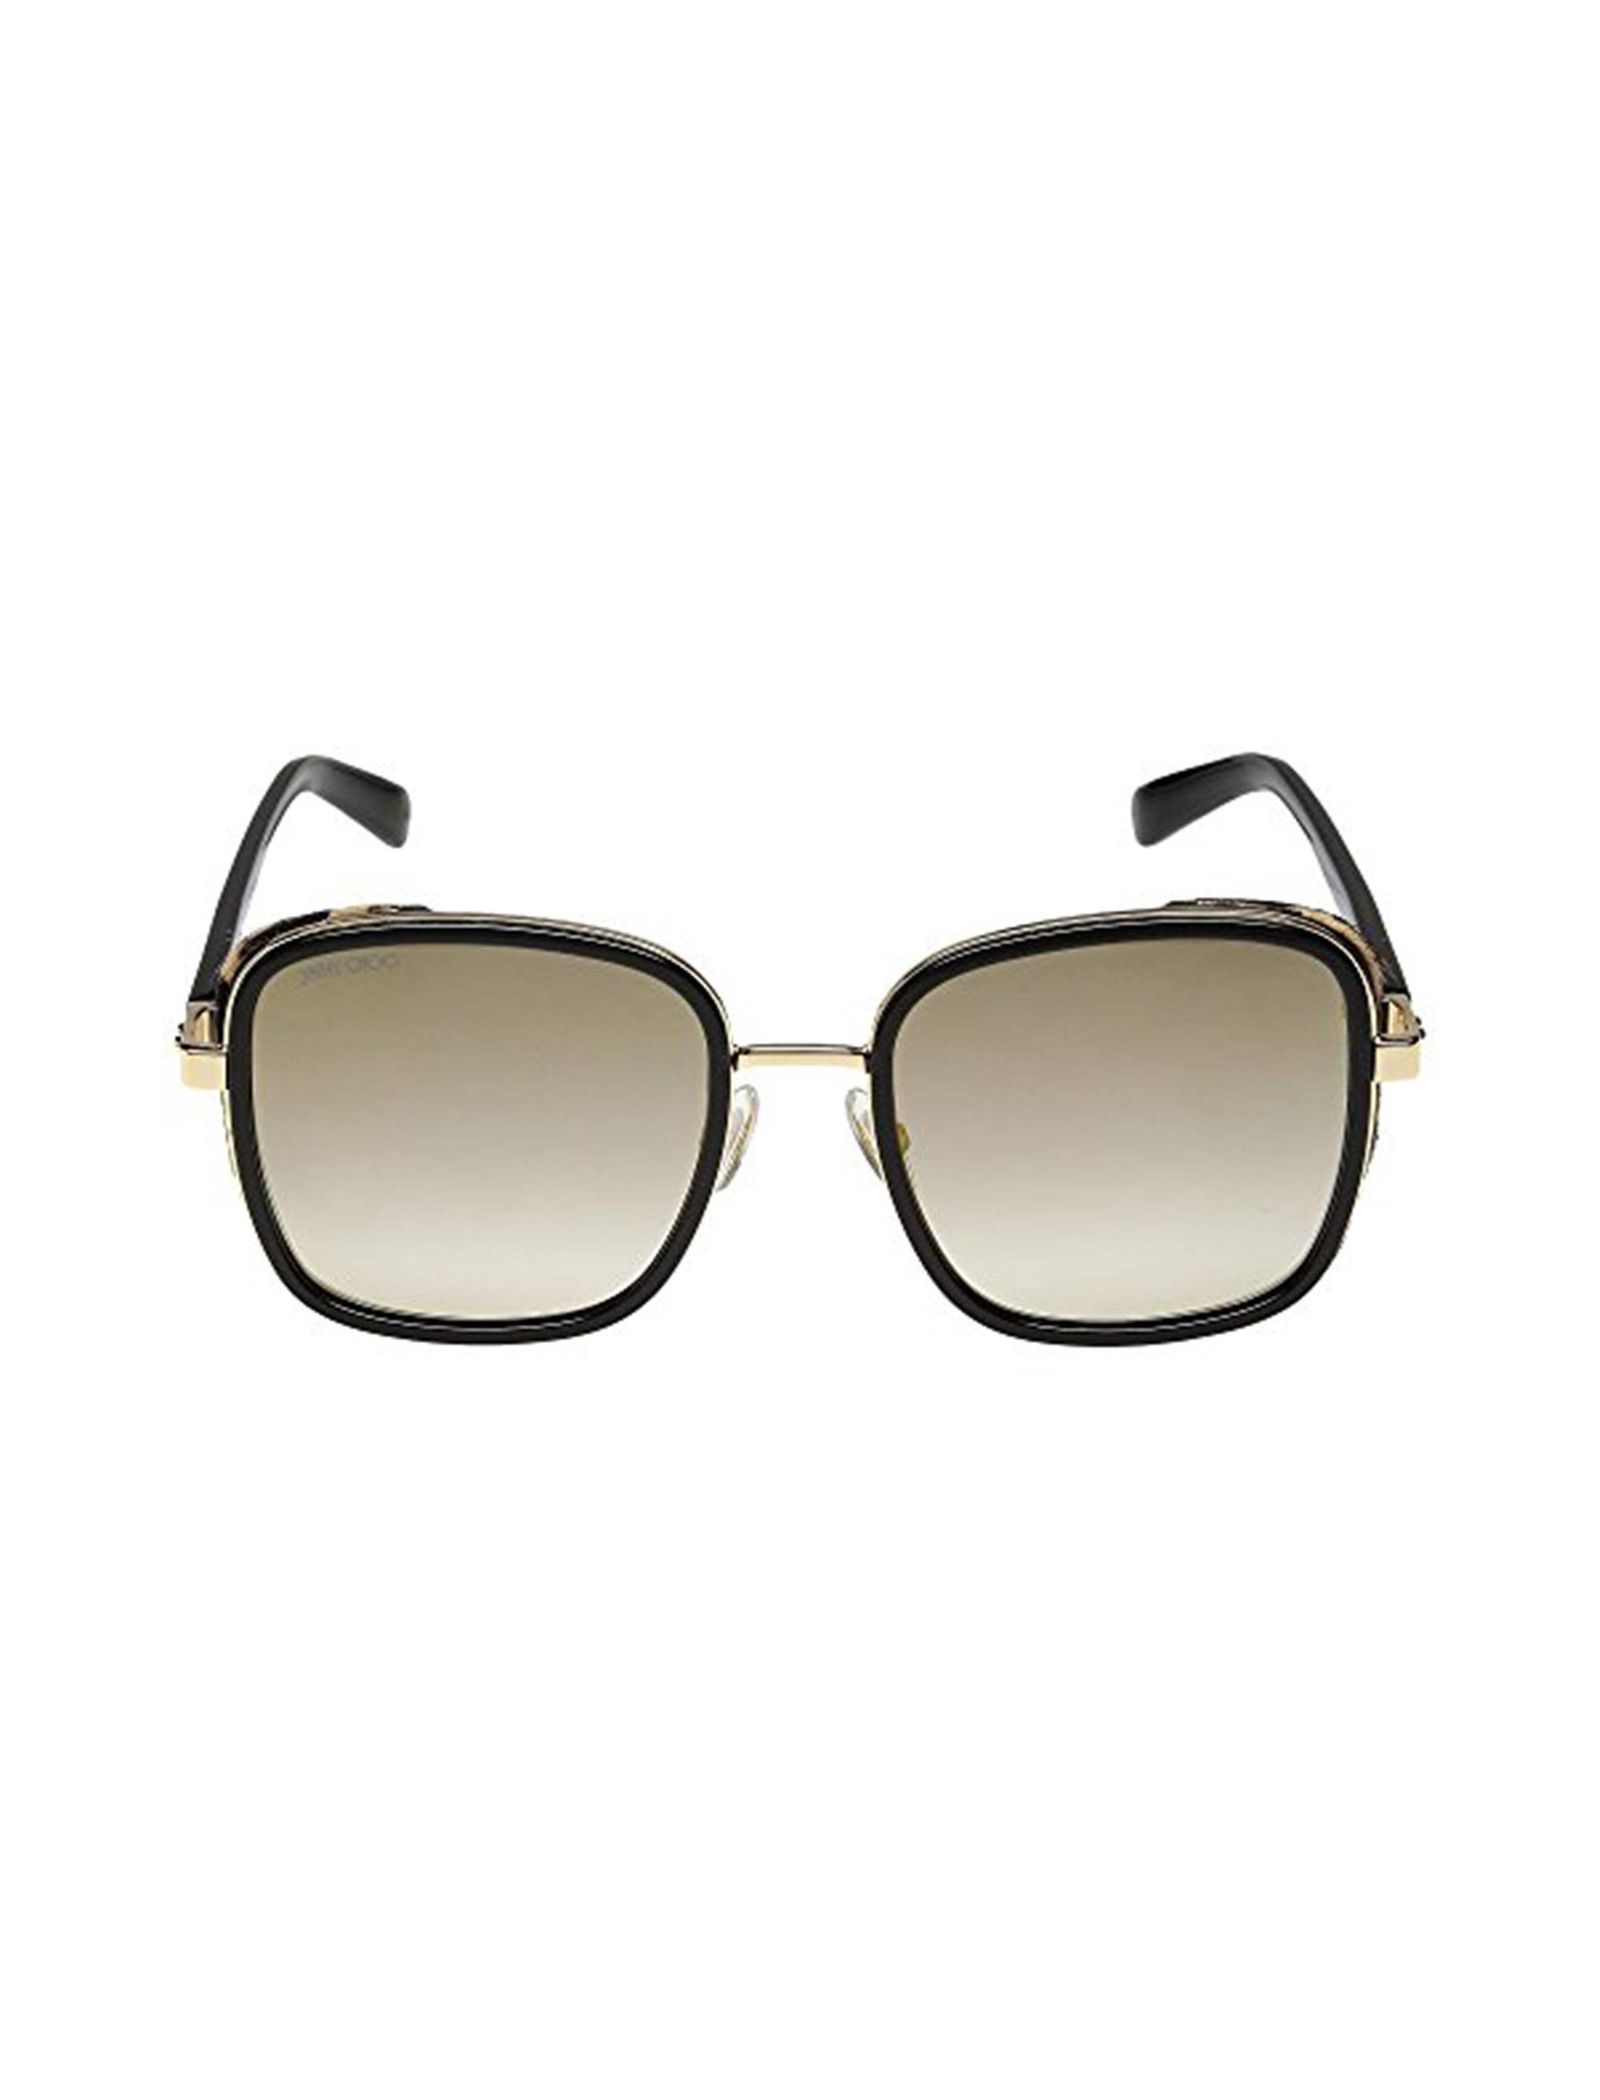 عینک آفتابی مربعی زنانه - جیمی چو - مشکي-طلايي - 1